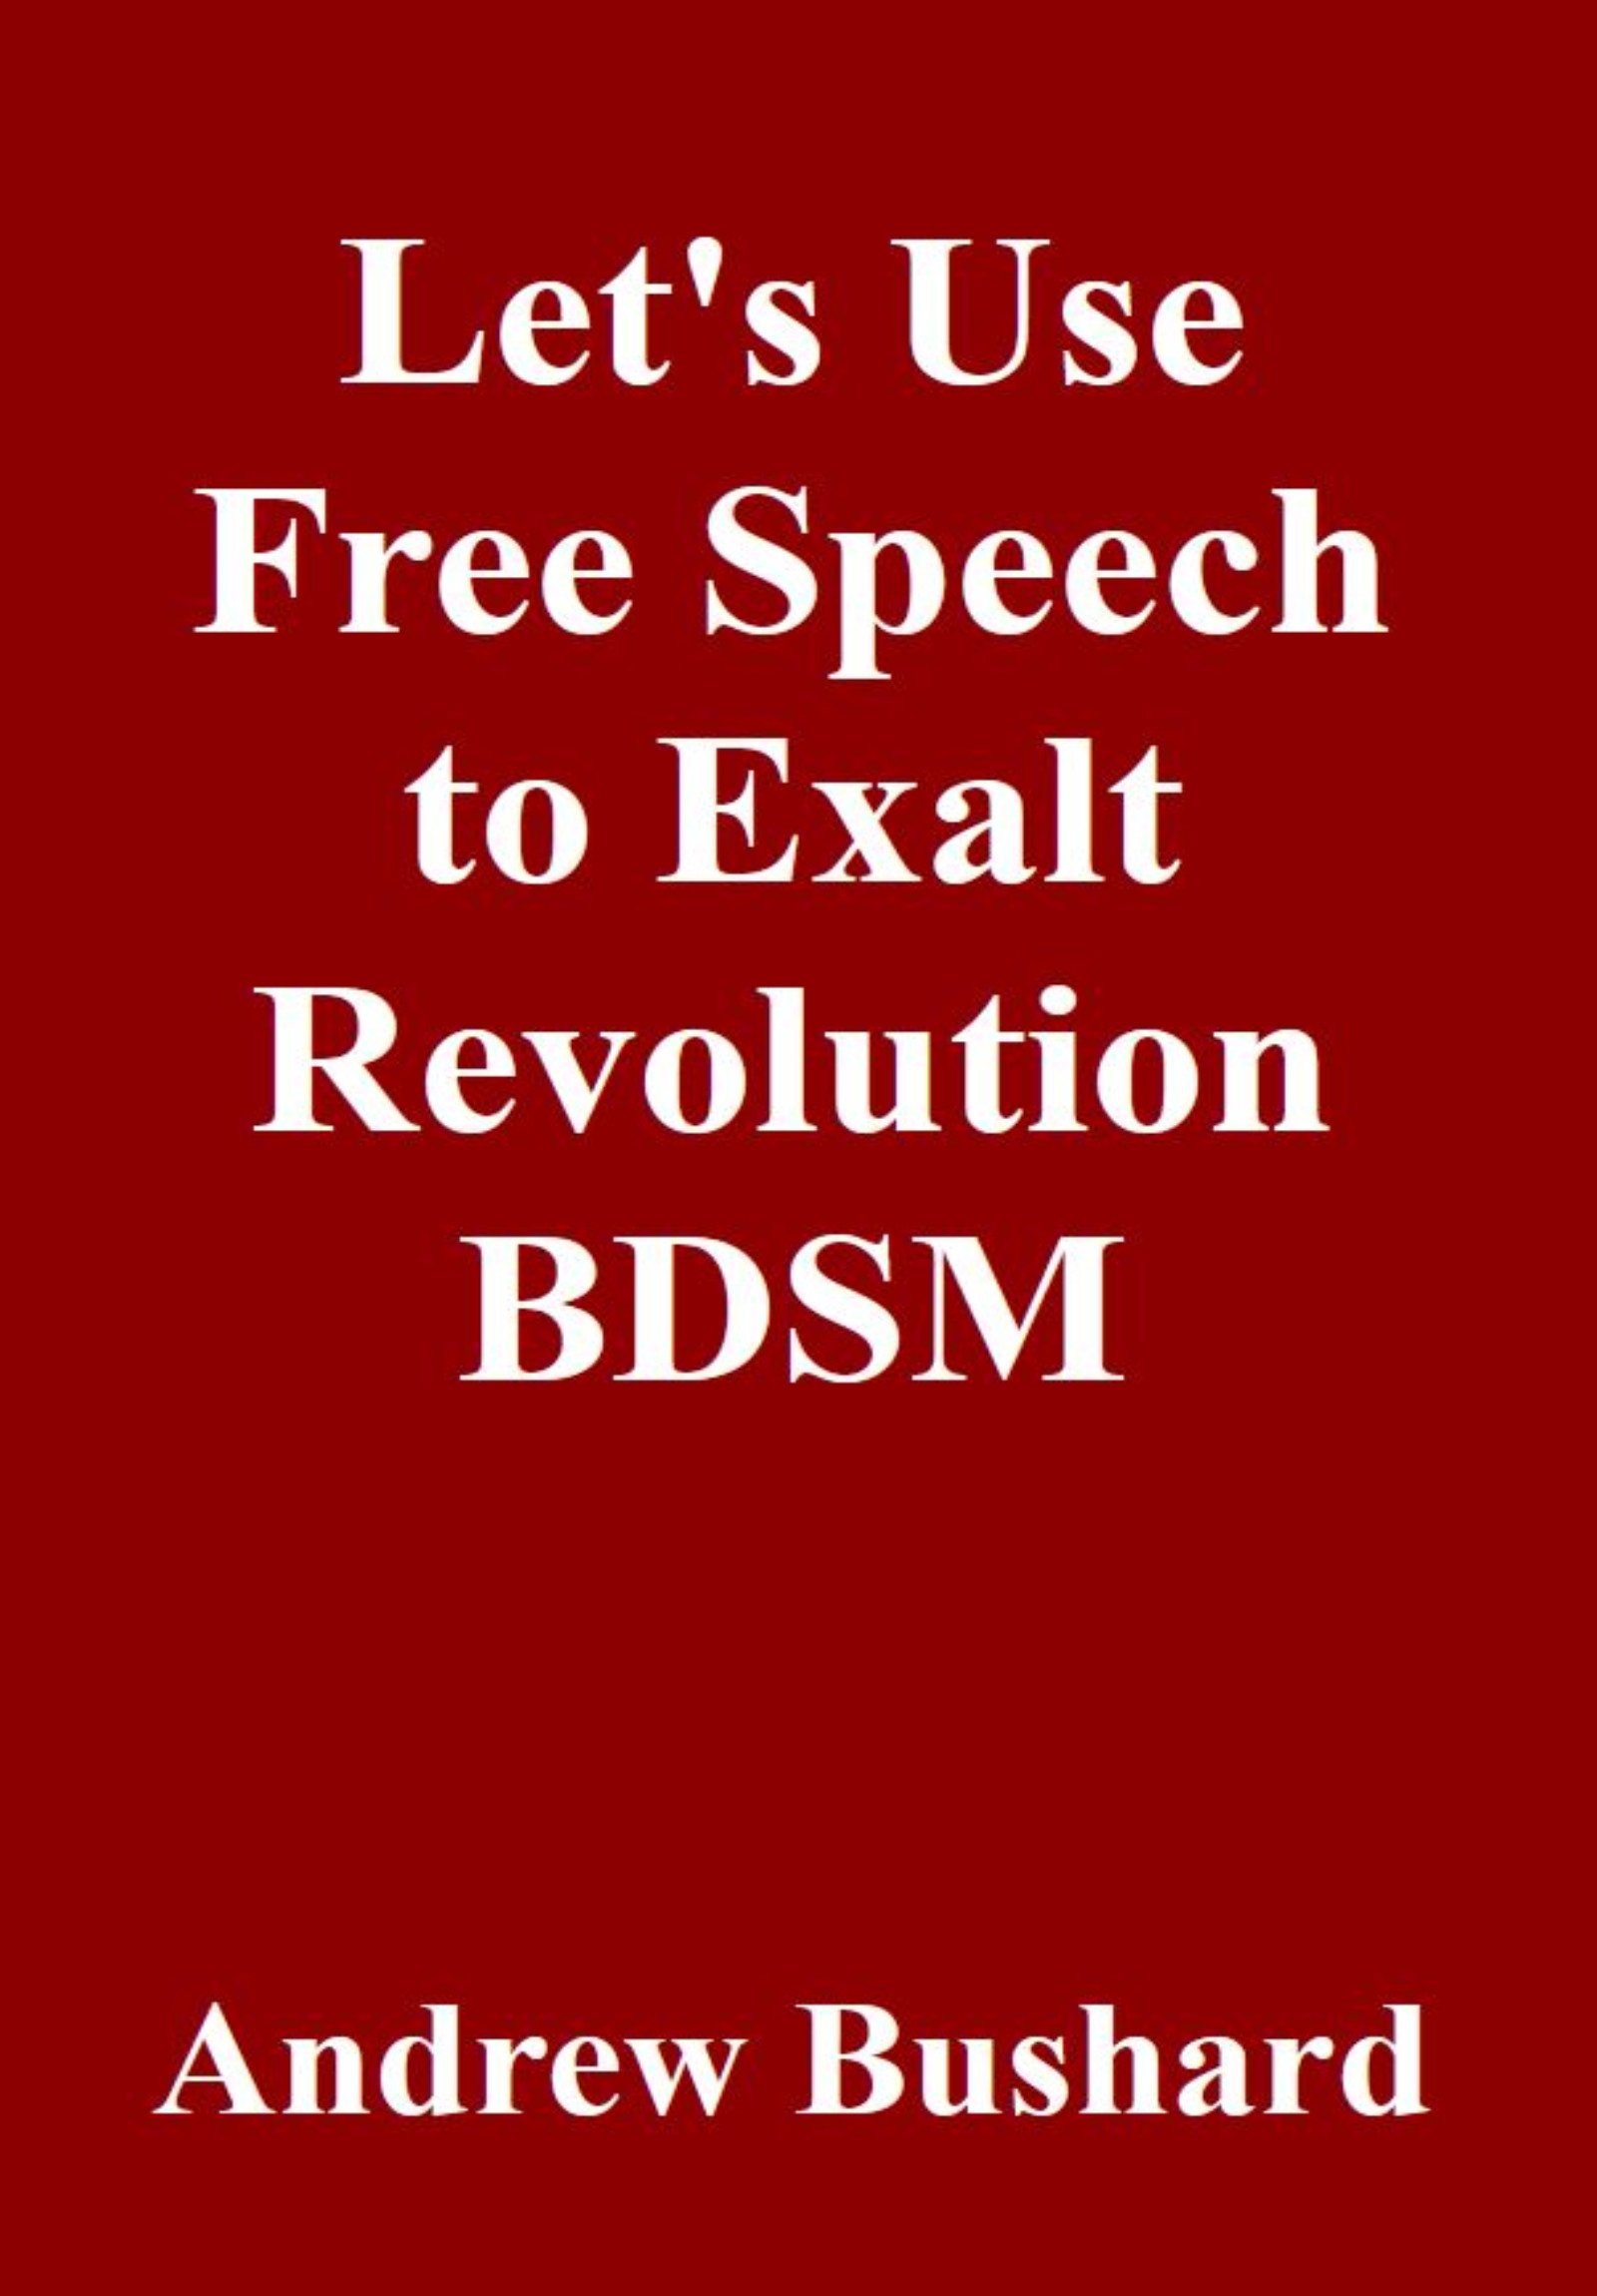 Exalt Revolution BDSM